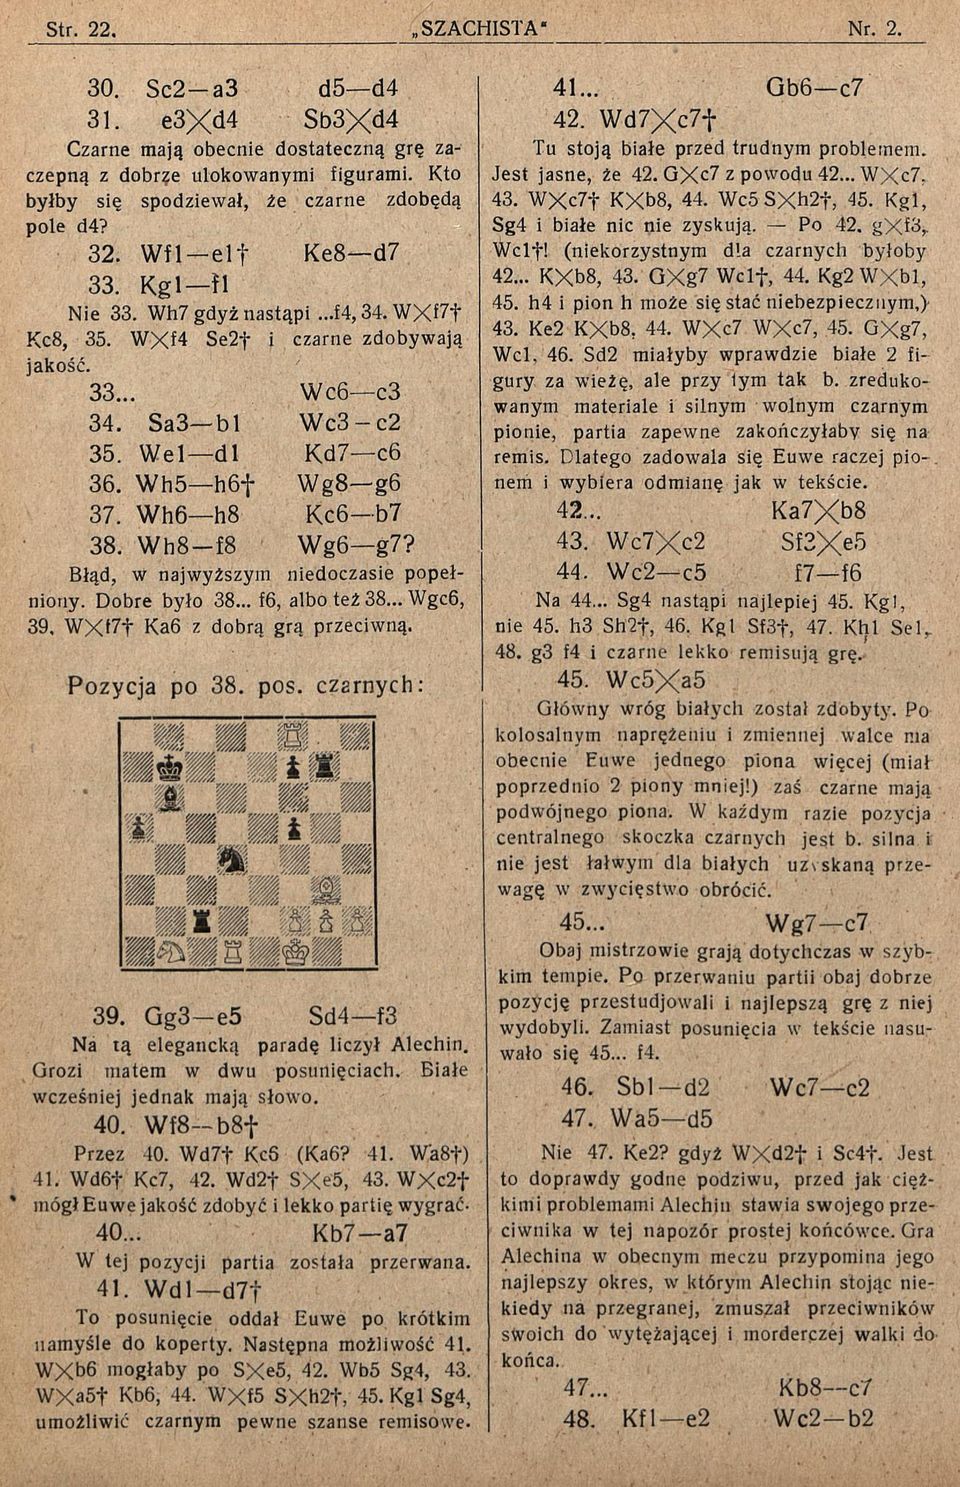 Wh8 f8 Wg6 g7? Błąd, w najwyższym niedoczasie popełniony. Dobre było 38... f6, albo też 38... Wgc6, 39. WX17f Ka6 z dobrą grą przeciwną. Pozycja po 38. pos. czarnych: 39.